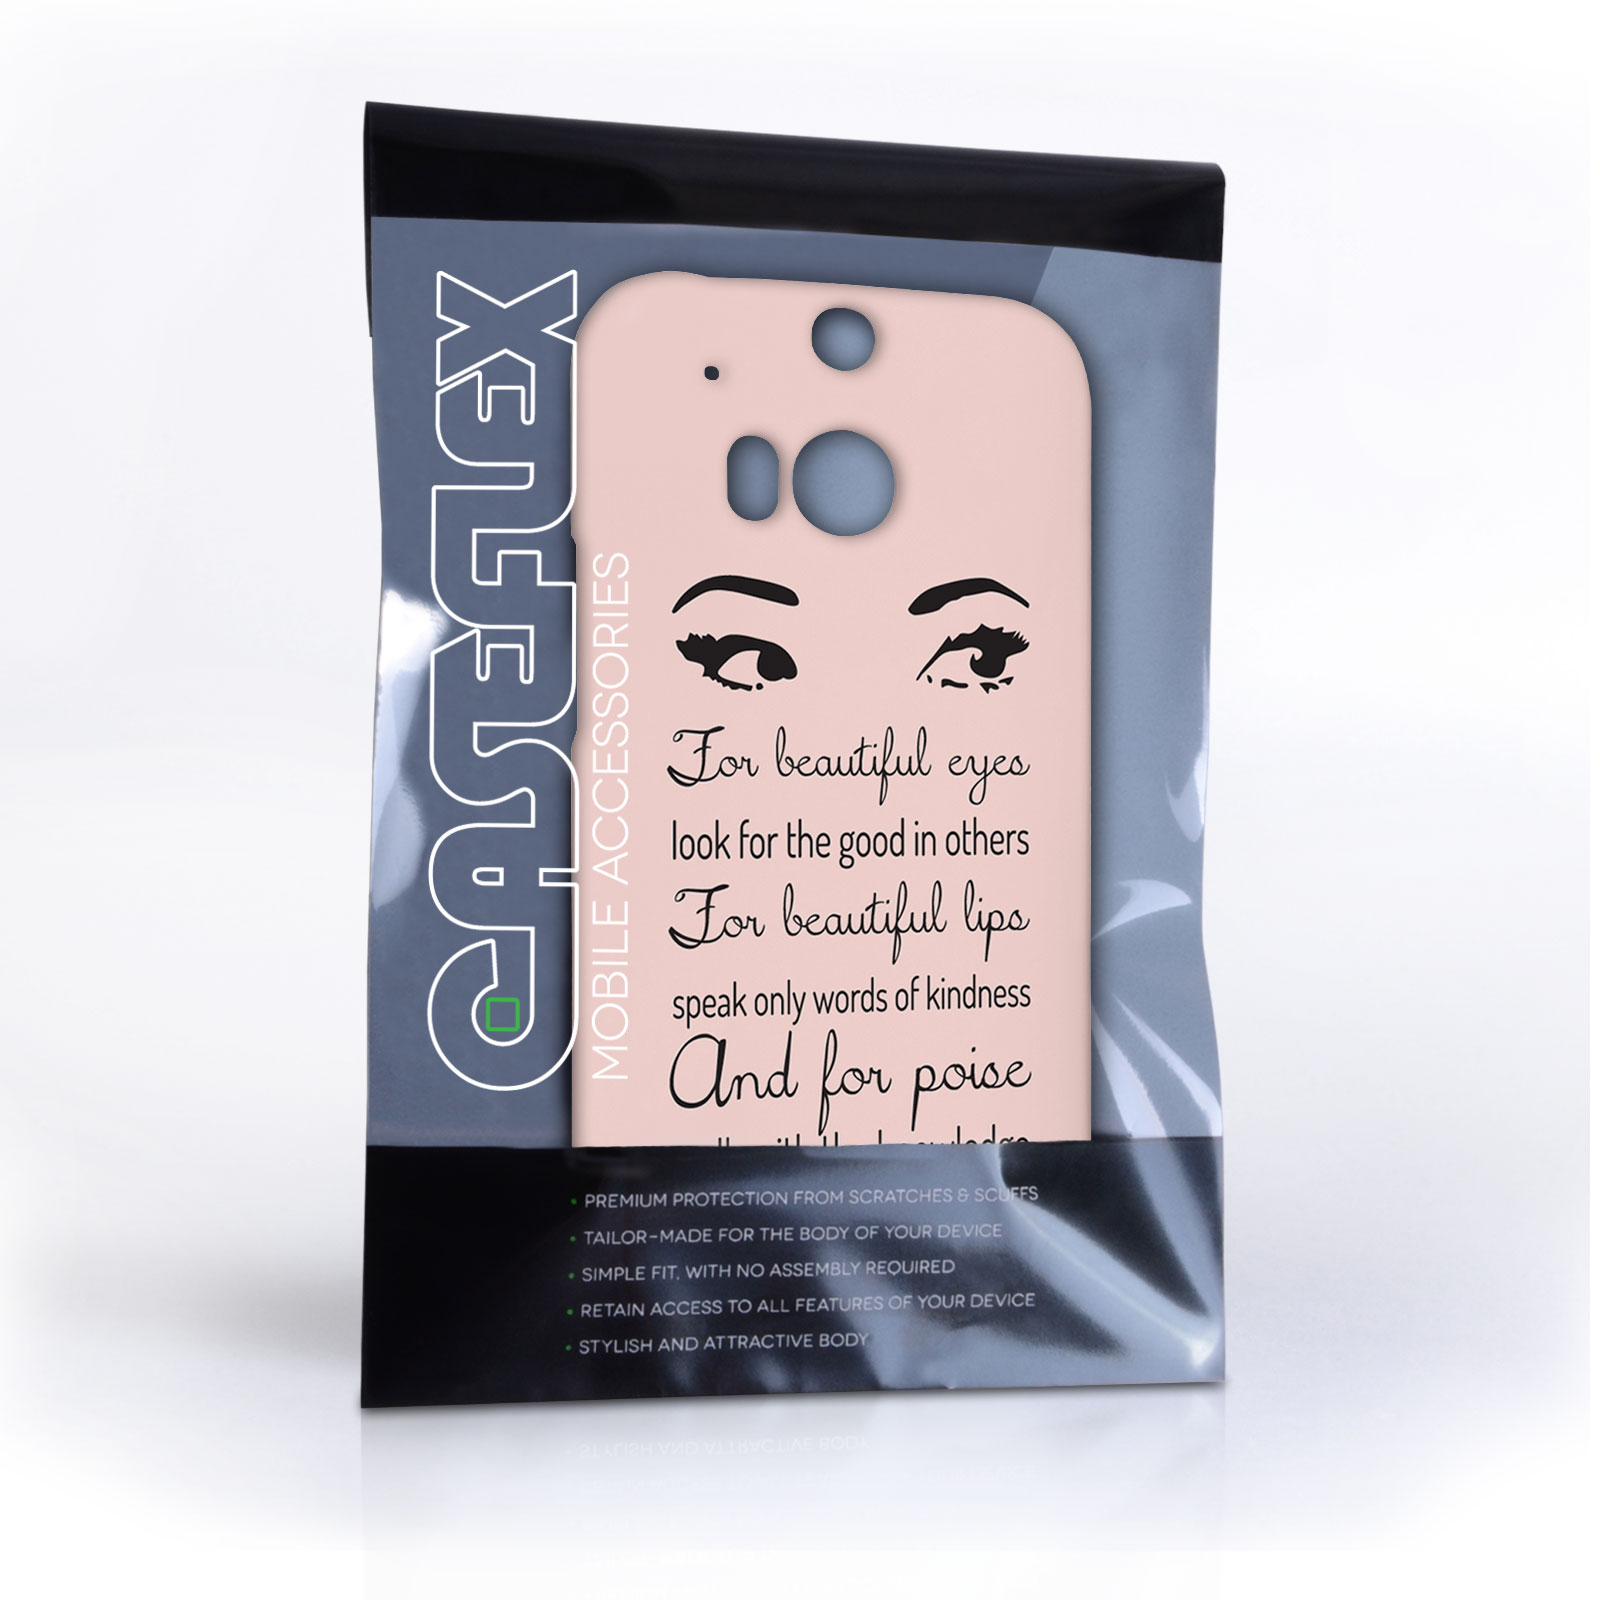 Caseflex HTC One M8 Audrey Hepburn ‘Eyes’ Quote Case